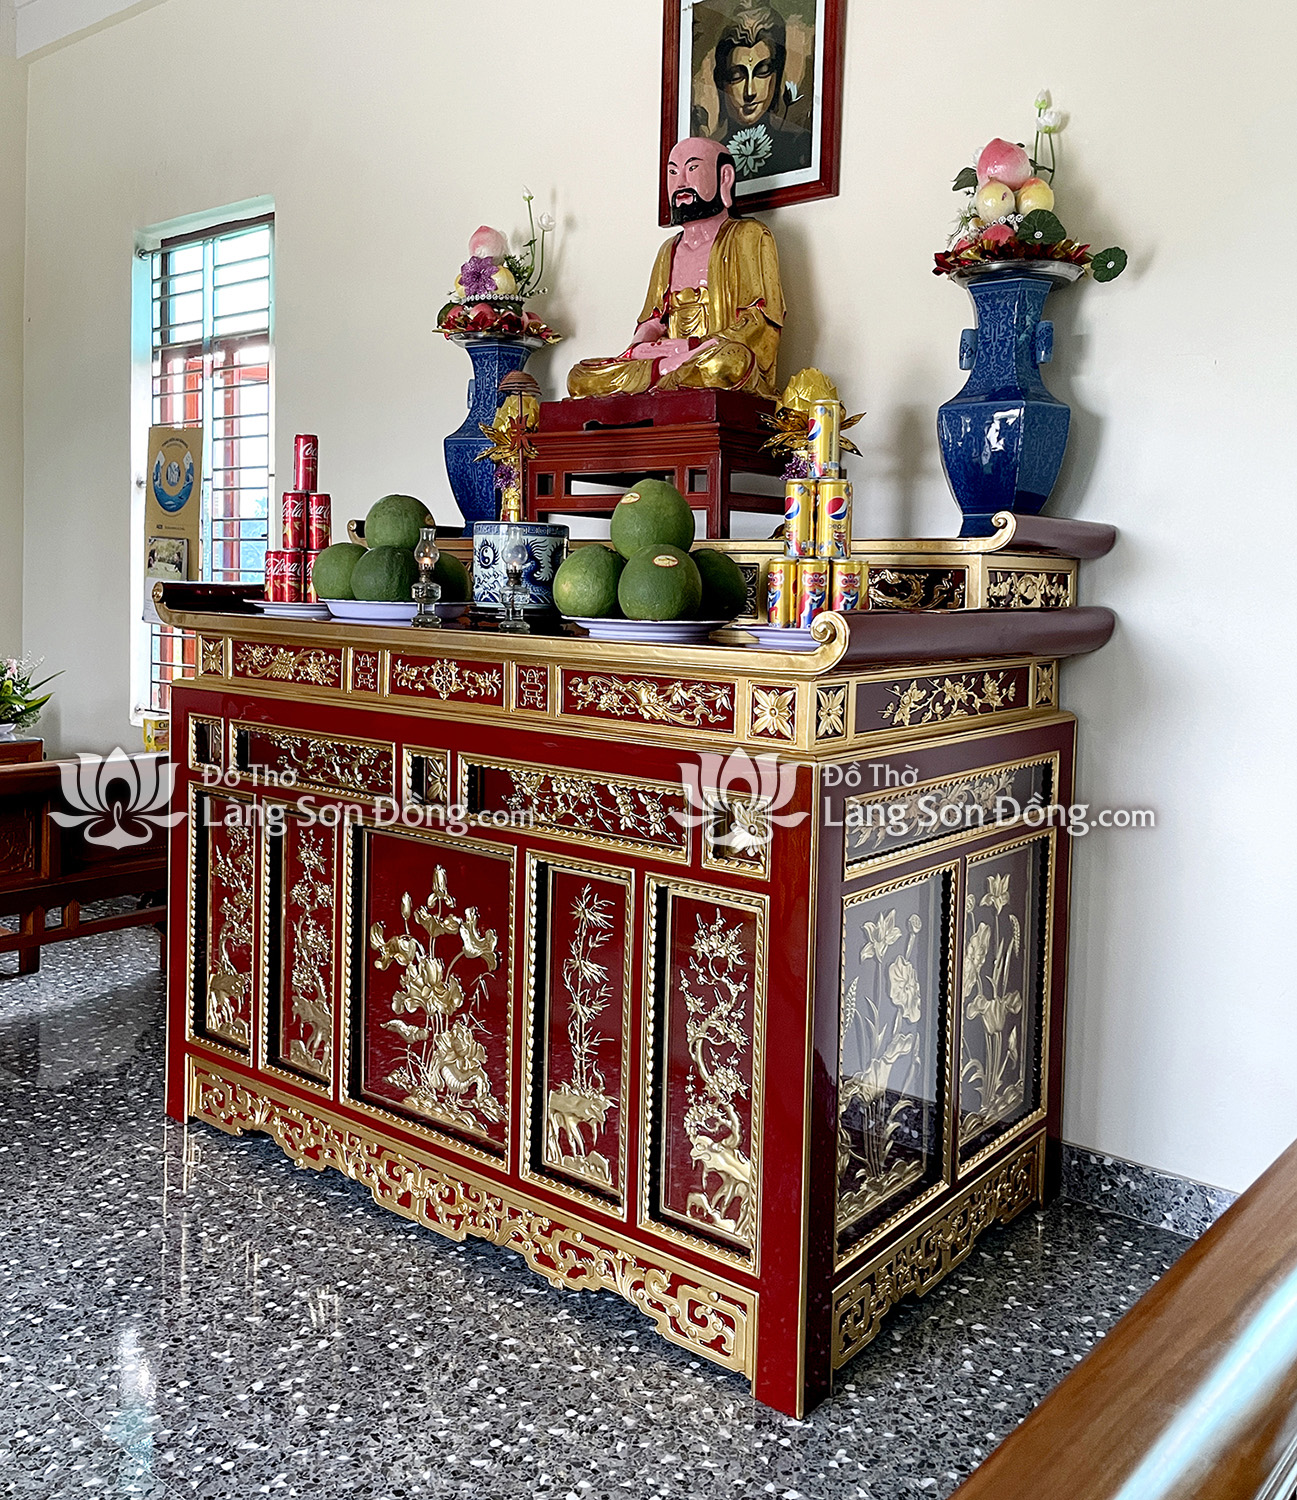 Bàn thờ Chấp Tải sơn son thếp vàng, chùa Huyền Quang